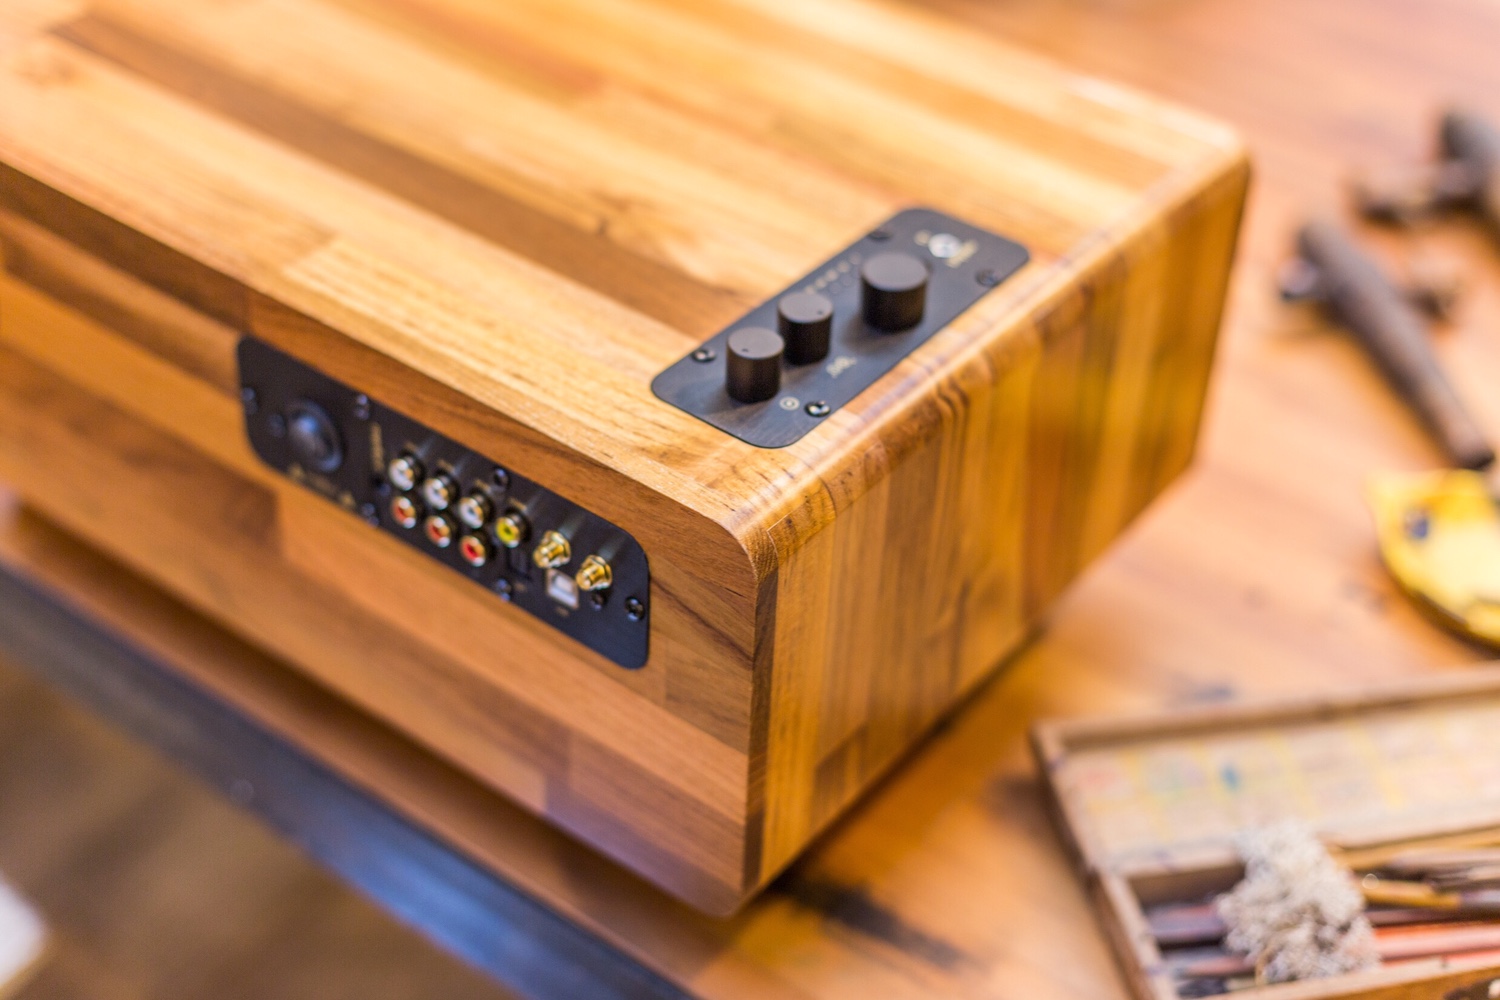 min7 handmade wooden speaker kickstarter minfort 3